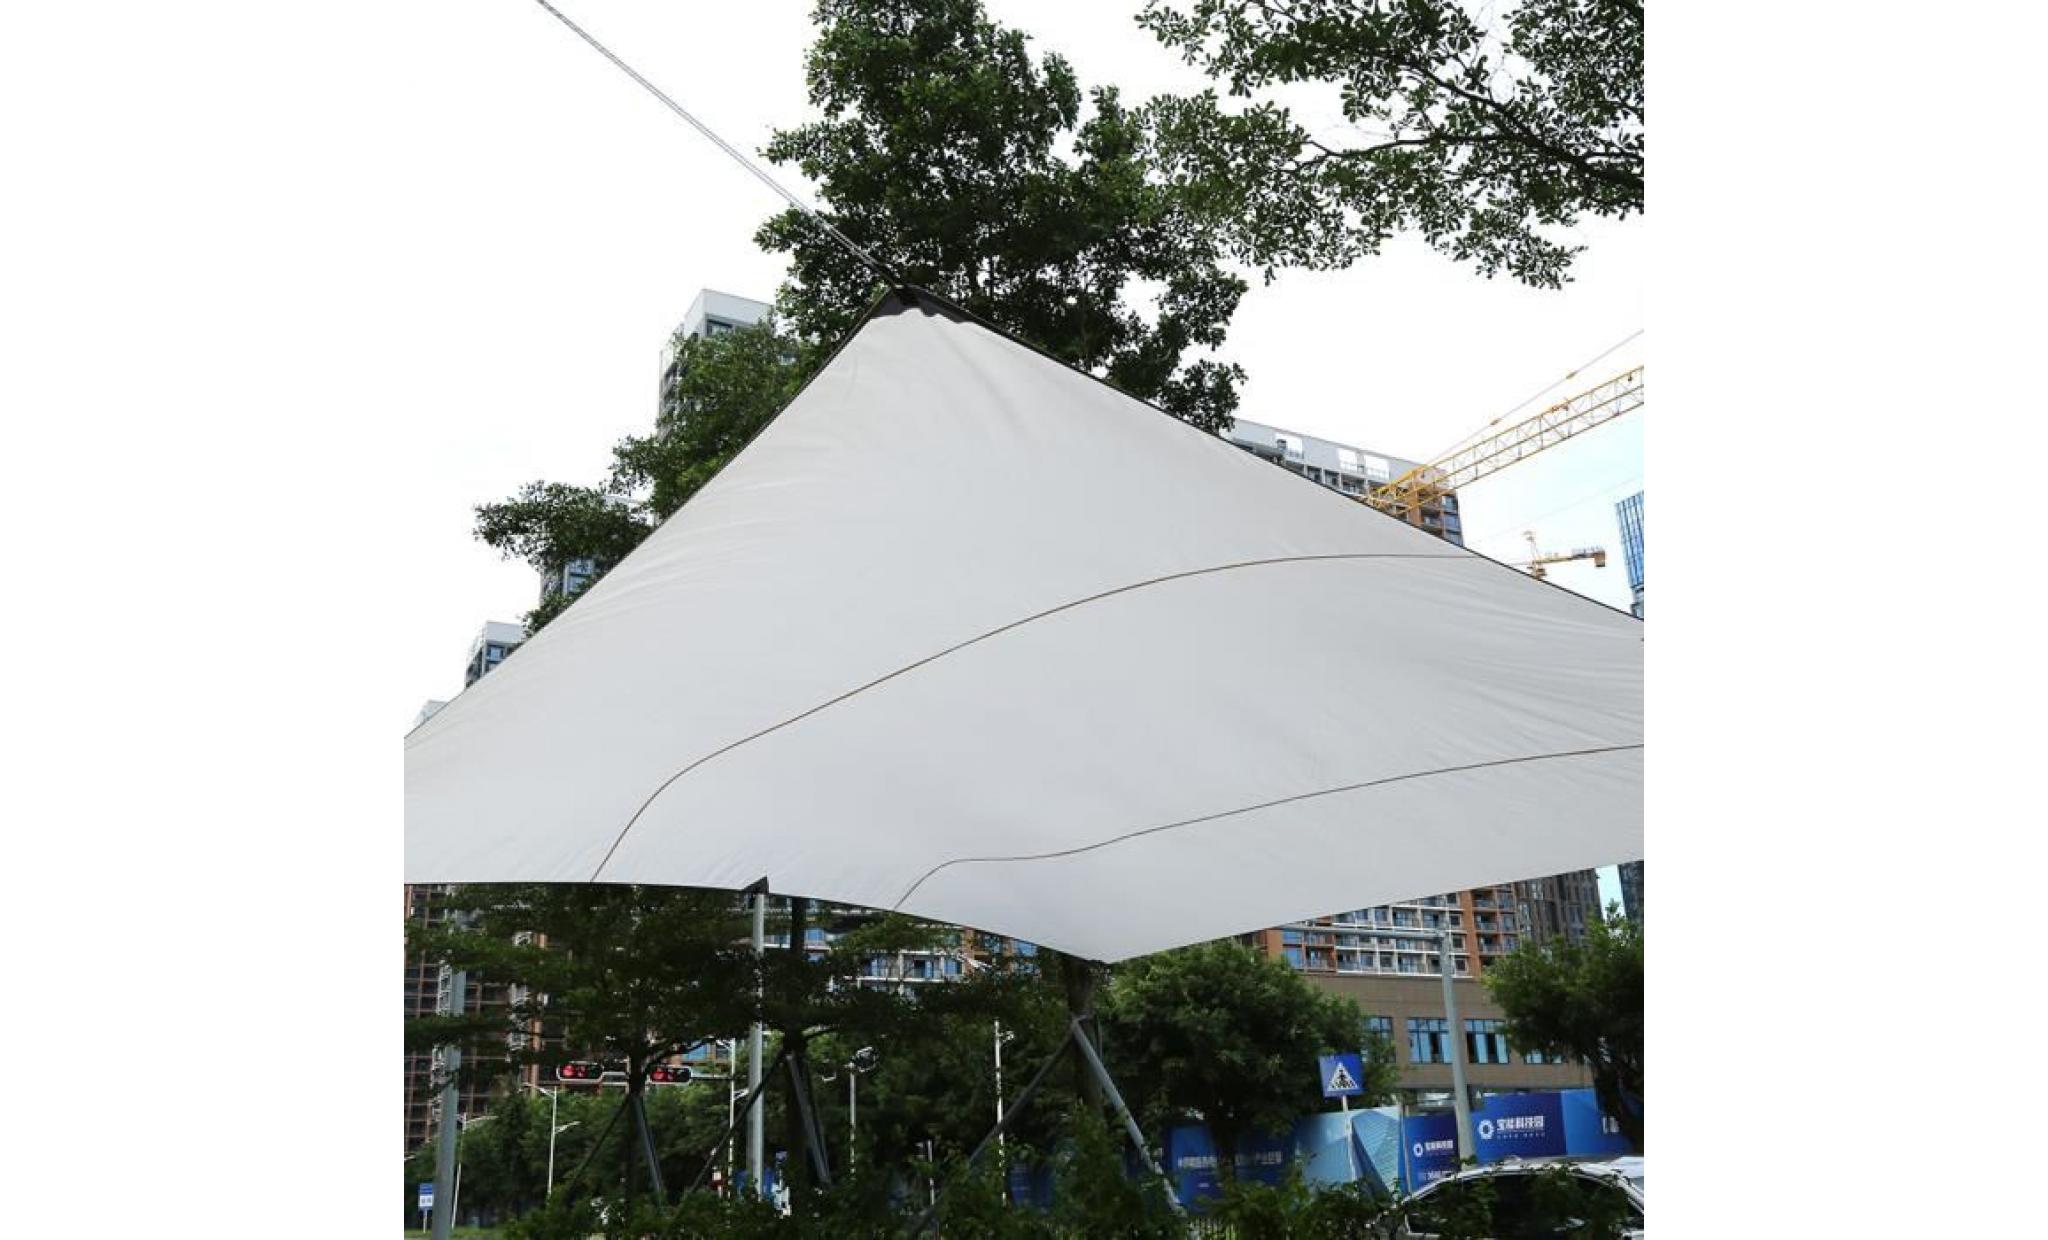 4.5 * 5 m toile solaire, voile d'ombrage, auvent de jardin étanche brise vue rouge   yuyuan shop pas cher